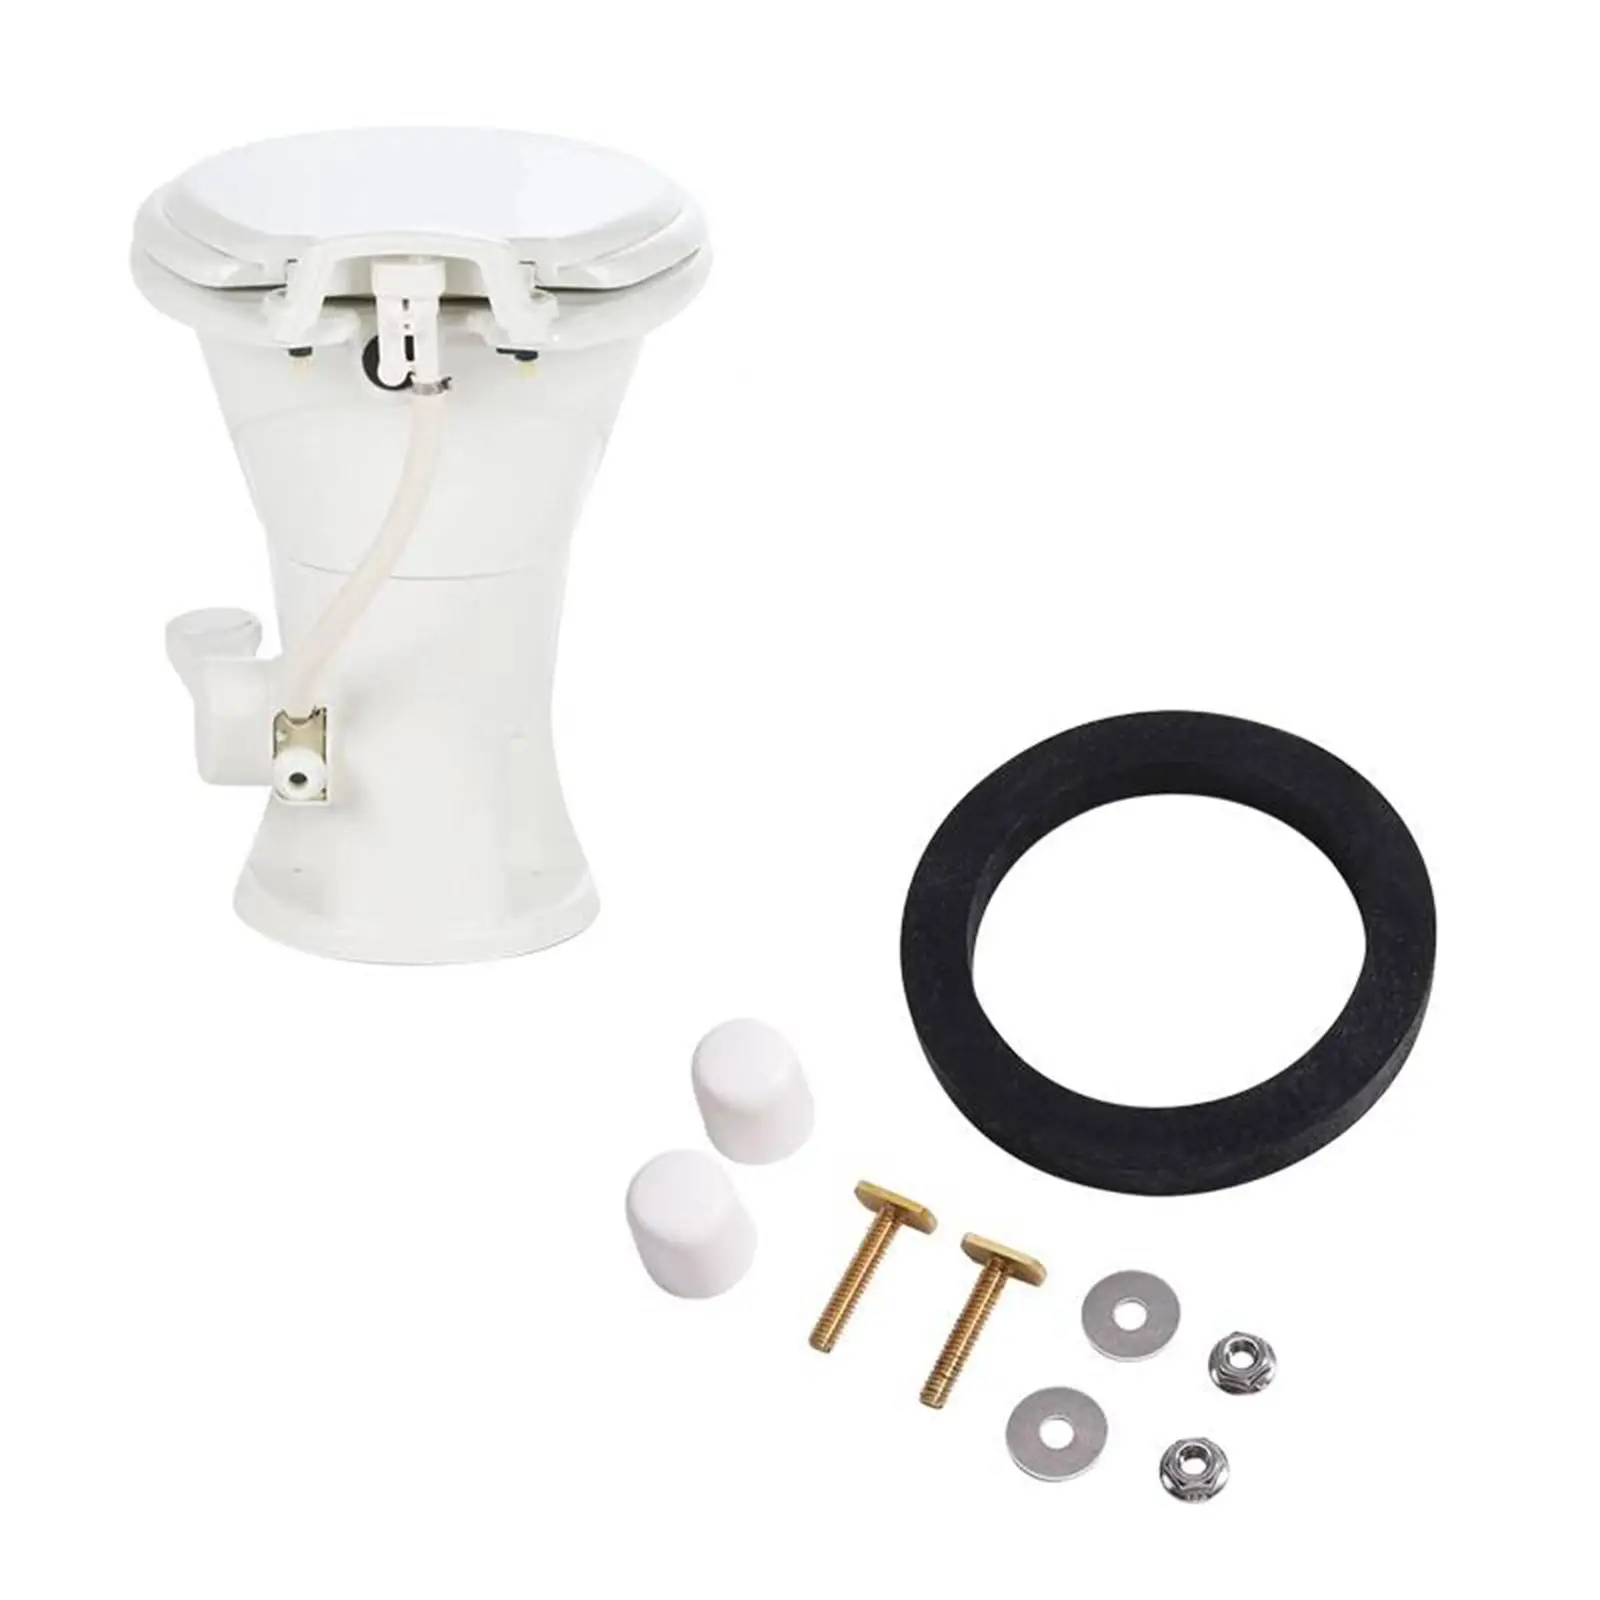 RV Toilet Seal Kit RV Toilet Gasket Toilet Mounting Hardware Kit RV Toilet Parts for 300 Series Toilets